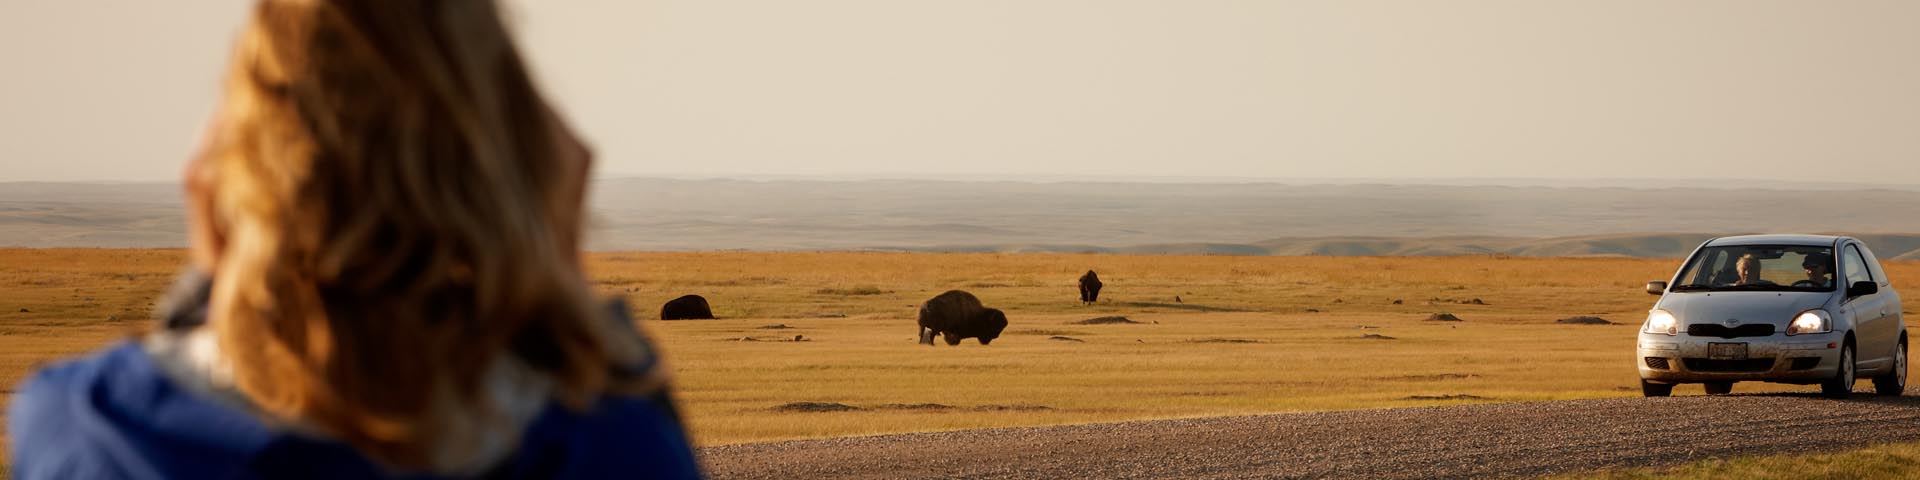 Des visiteurs observent les bisons dans les plaines.